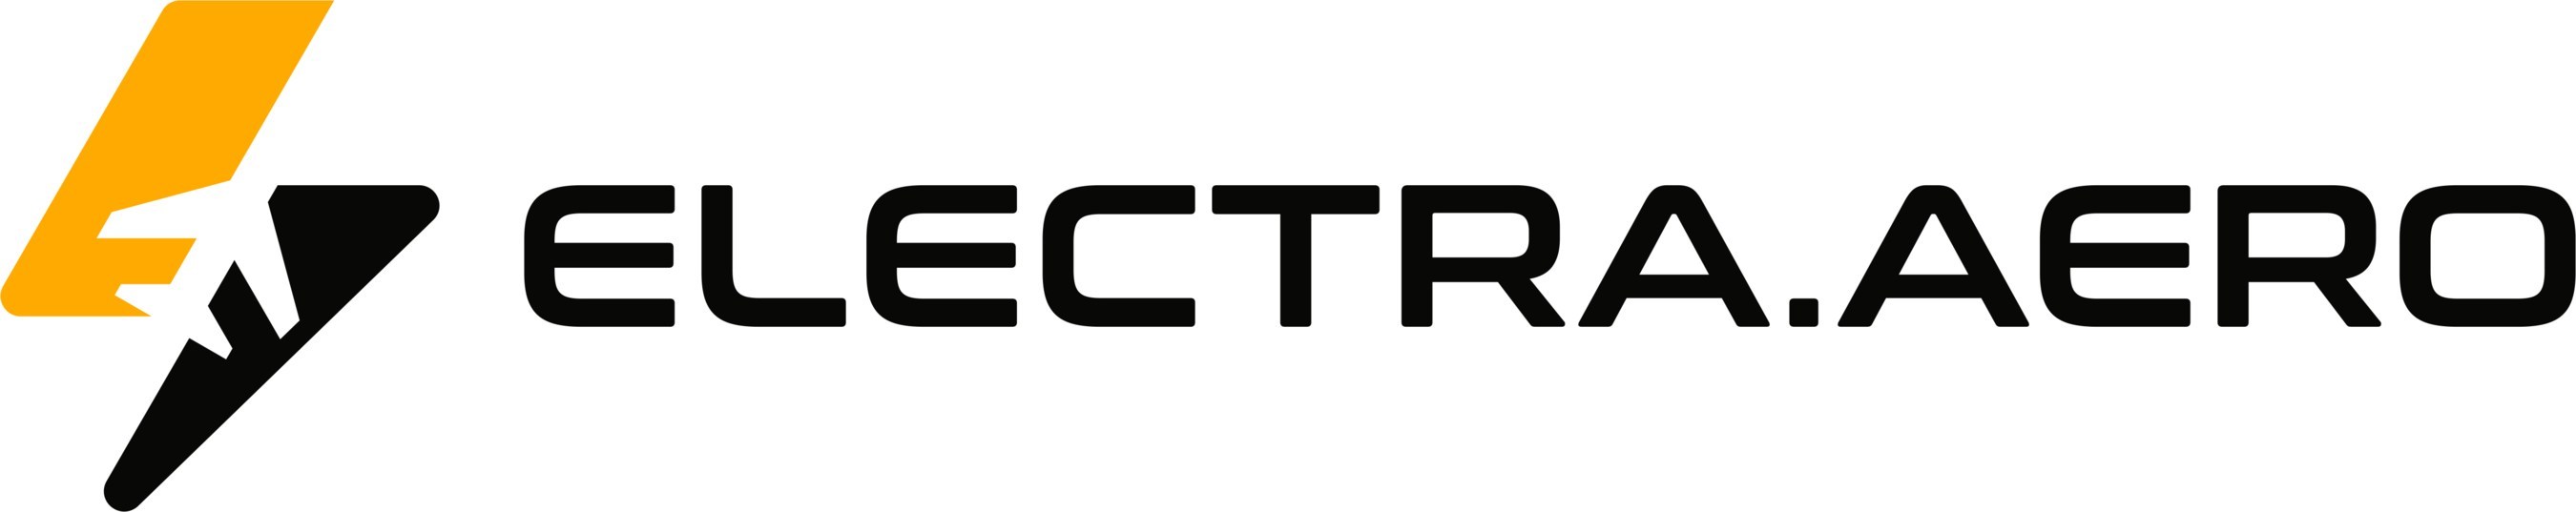 Electra.aero Logo